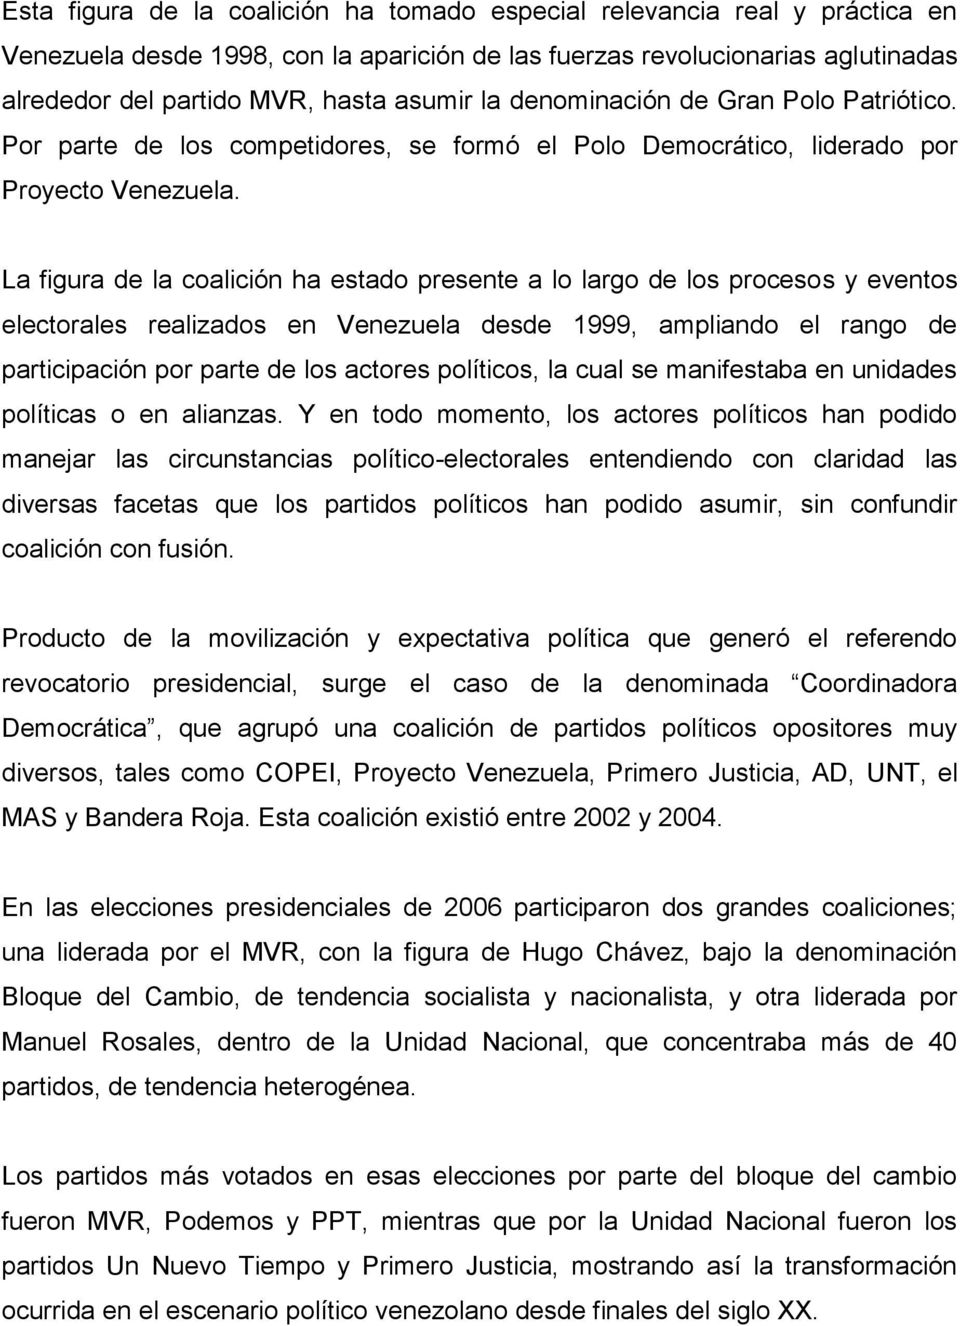 La figura de la coalición ha estado presente a lo largo de los procesos y eventos electorales realizados en Venezuela desde 1999, ampliando el rango de participación por parte de los actores